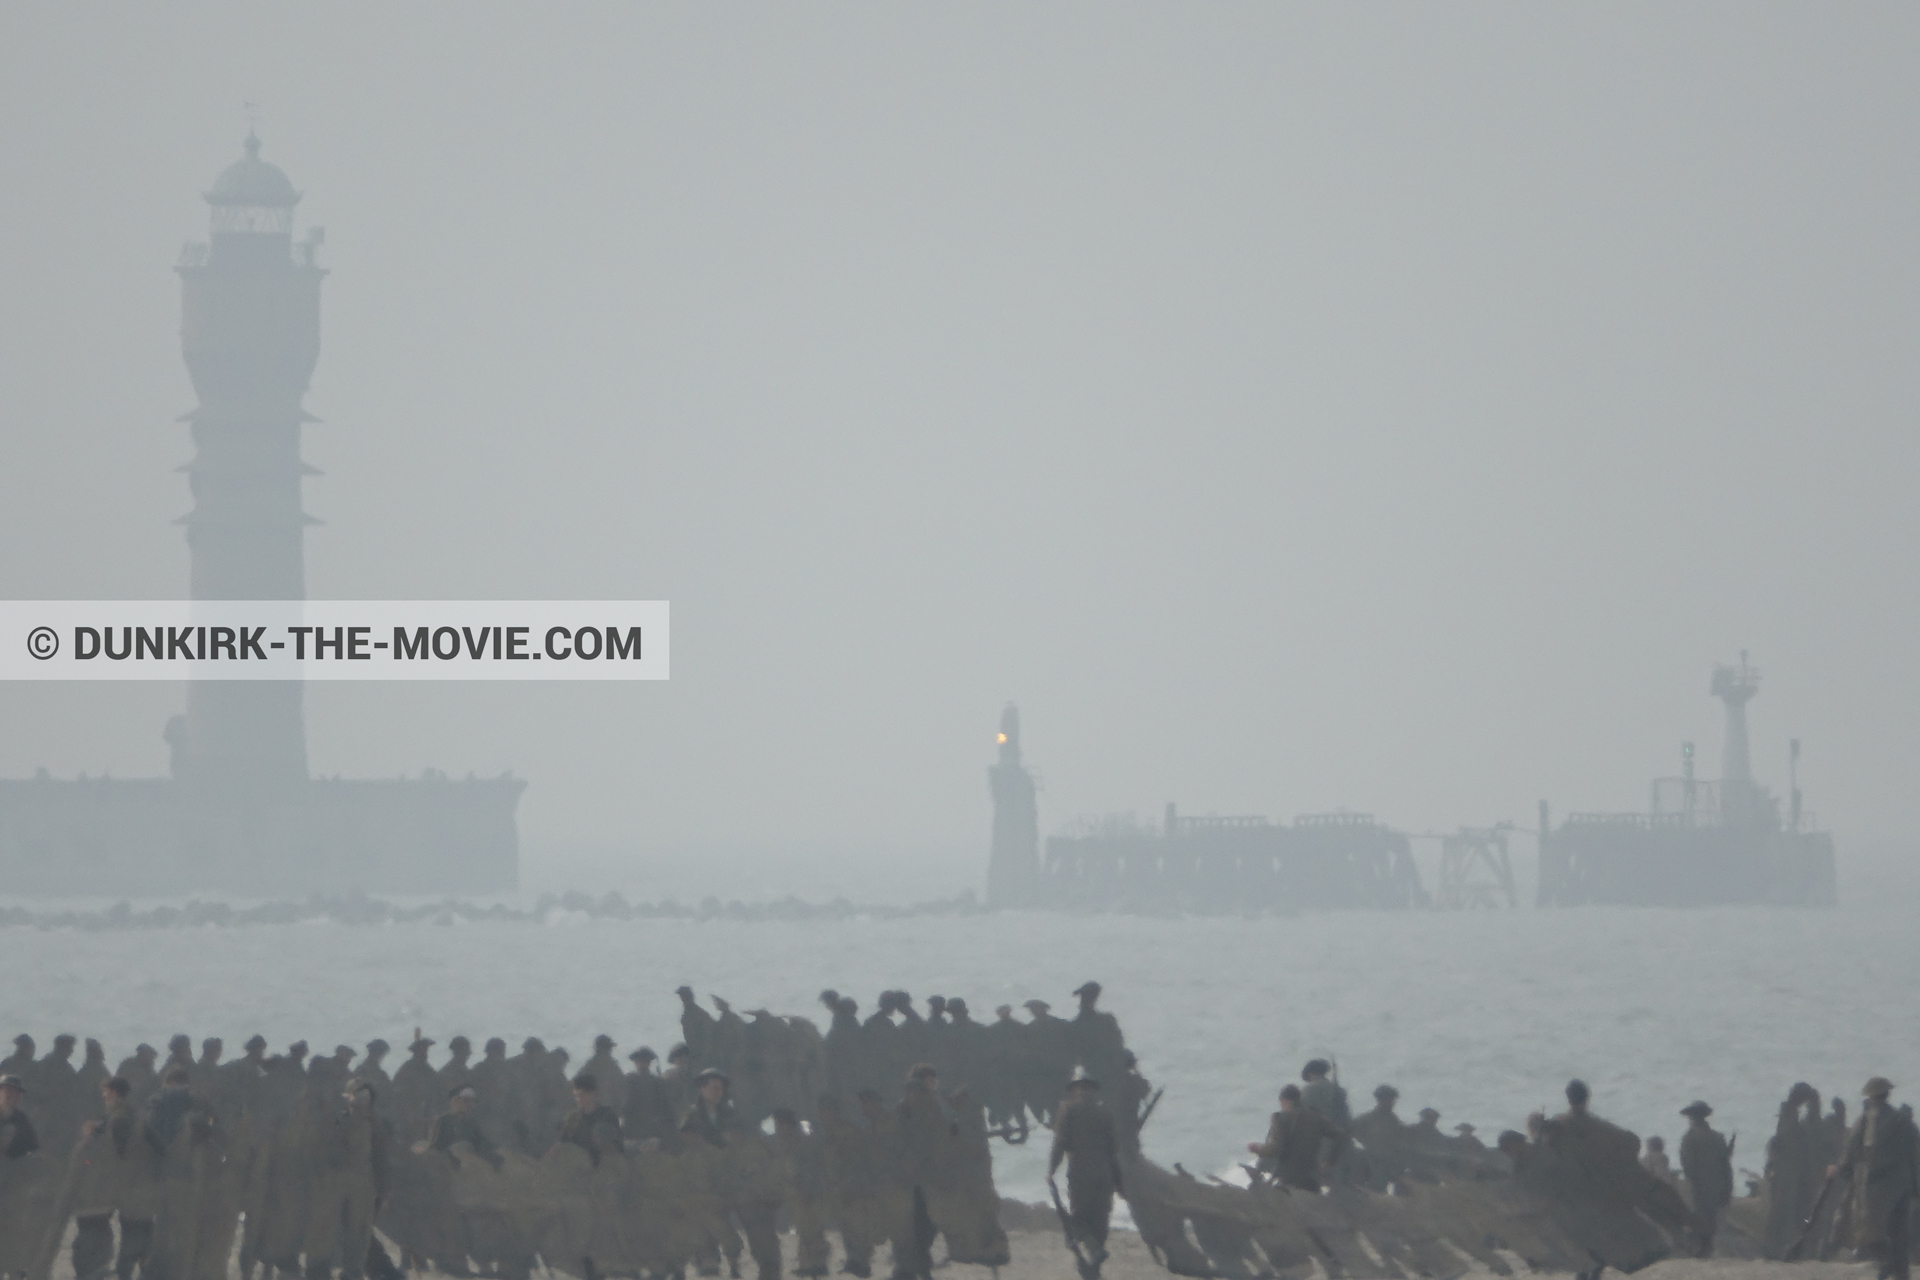 Fotos con cielo gris, extras, faro de Saint-Pol-sur-Mer, playa,  durante el rodaje de la película Dunkerque de Nolan